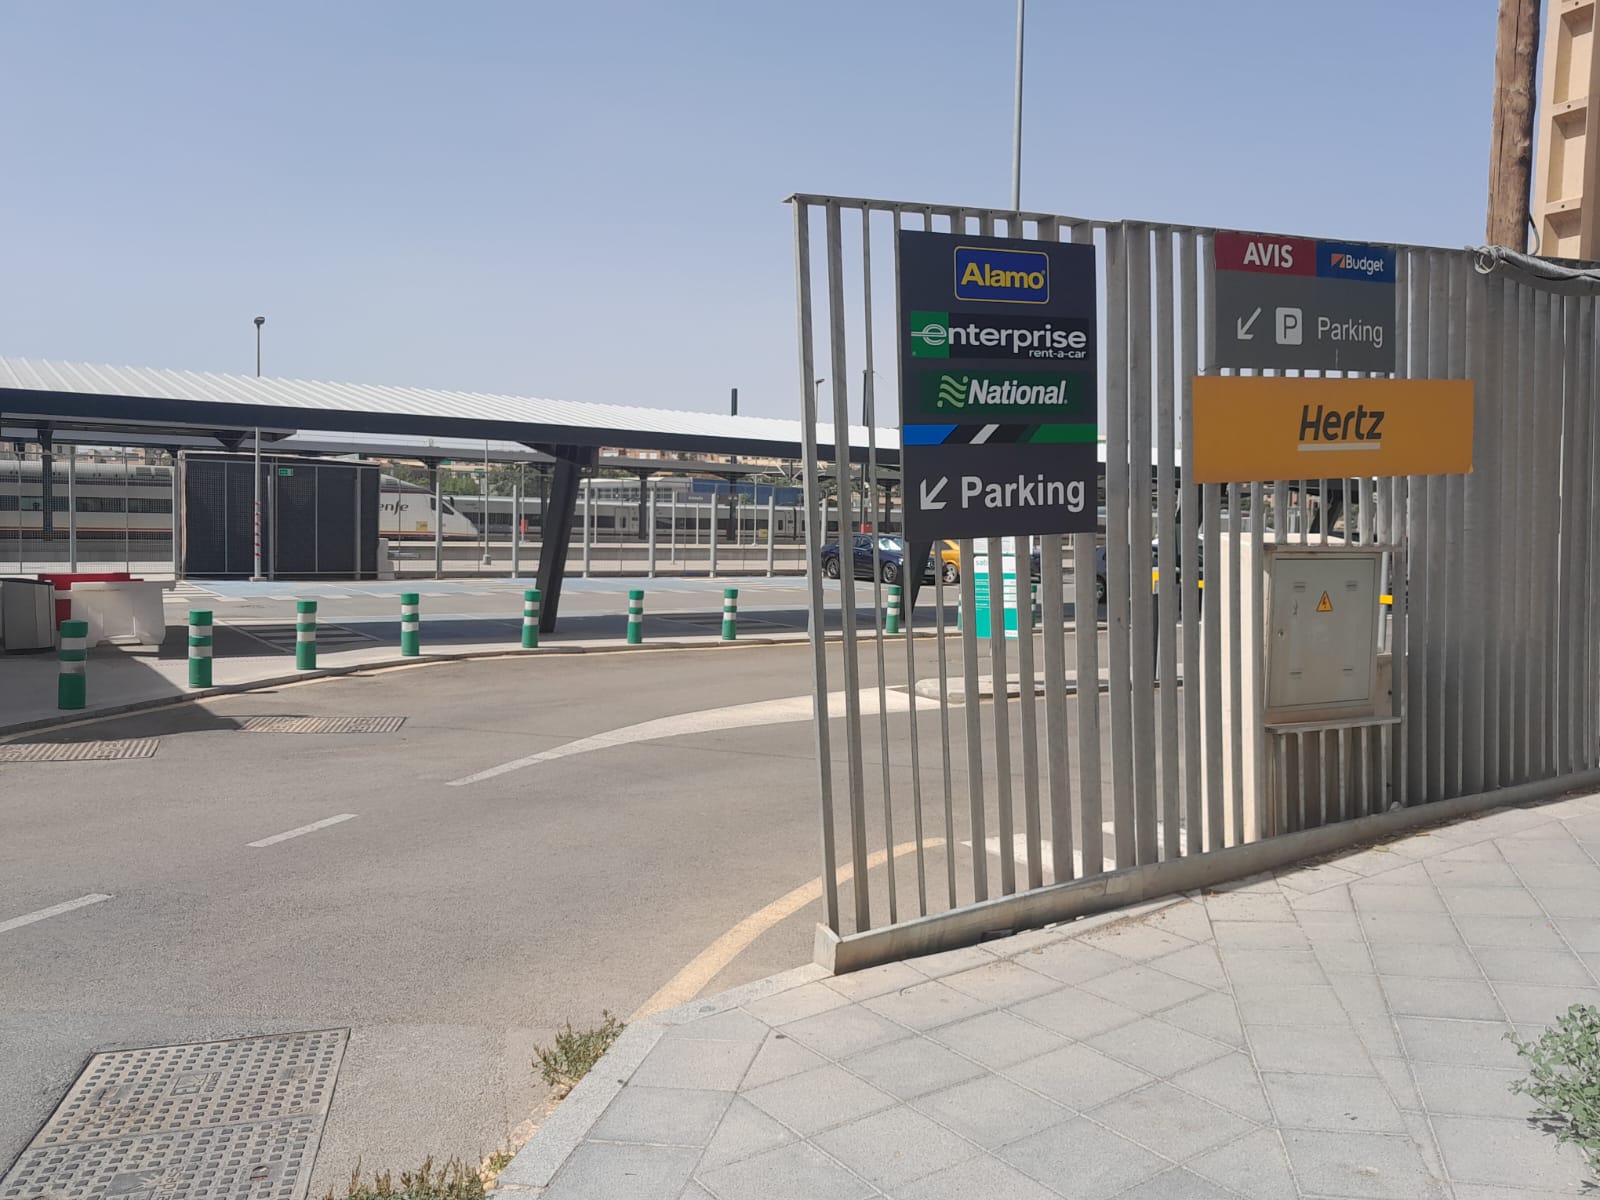 Images Enterprise Alquiler de Coches y Furgonetas - Estación de tren de Sevilla Santa Justa